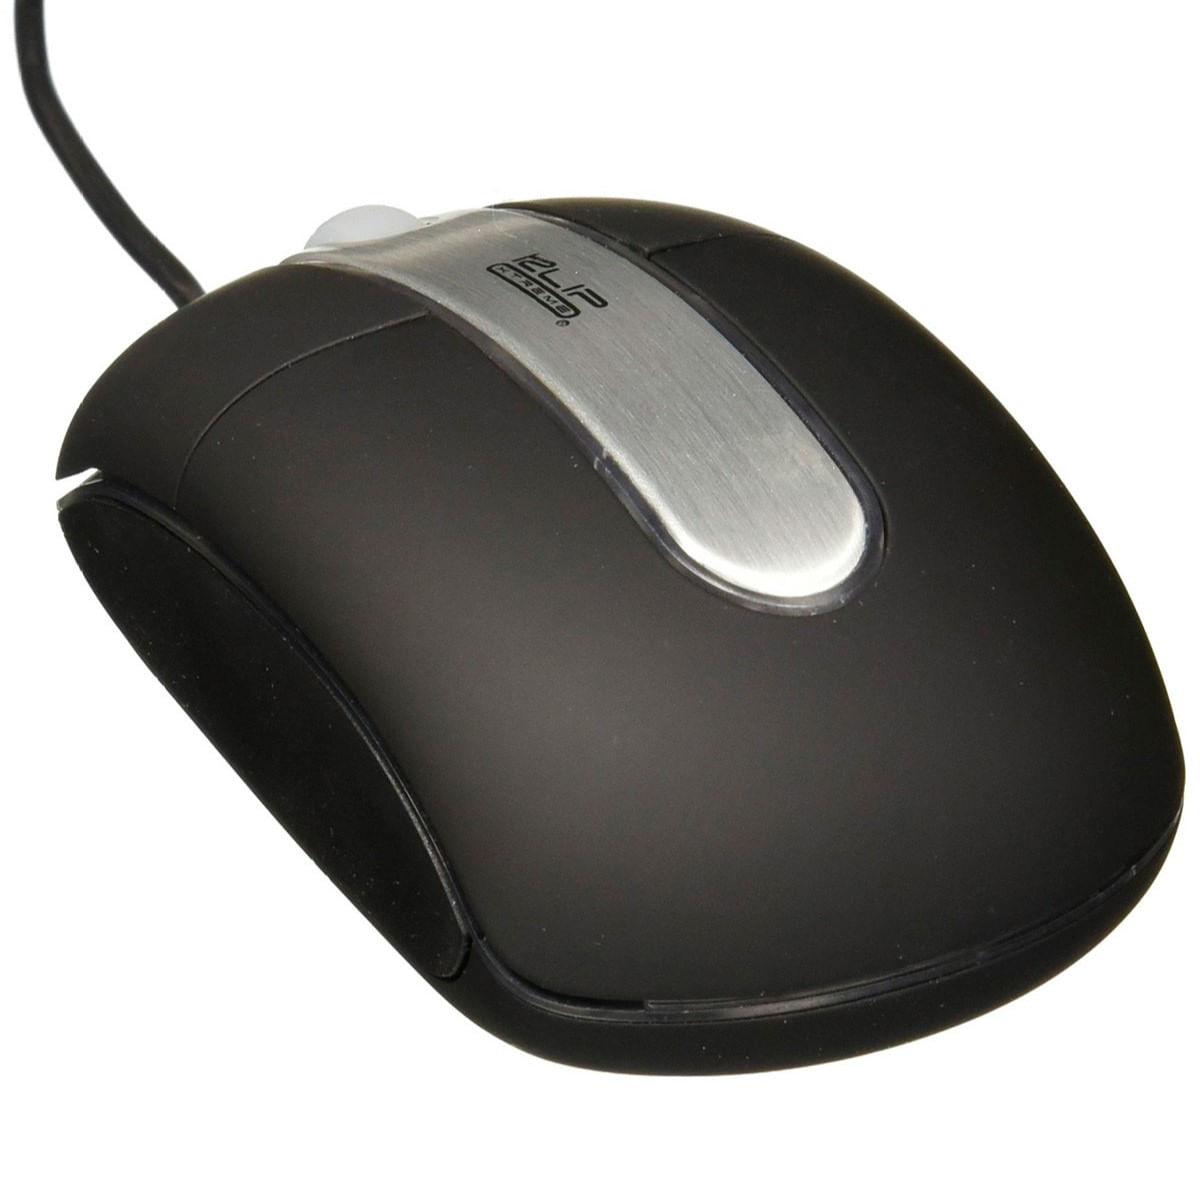 Mouse Klip Xtreme Óptico USB PS2 800 DPI Alámbrico Negro - KMO-102